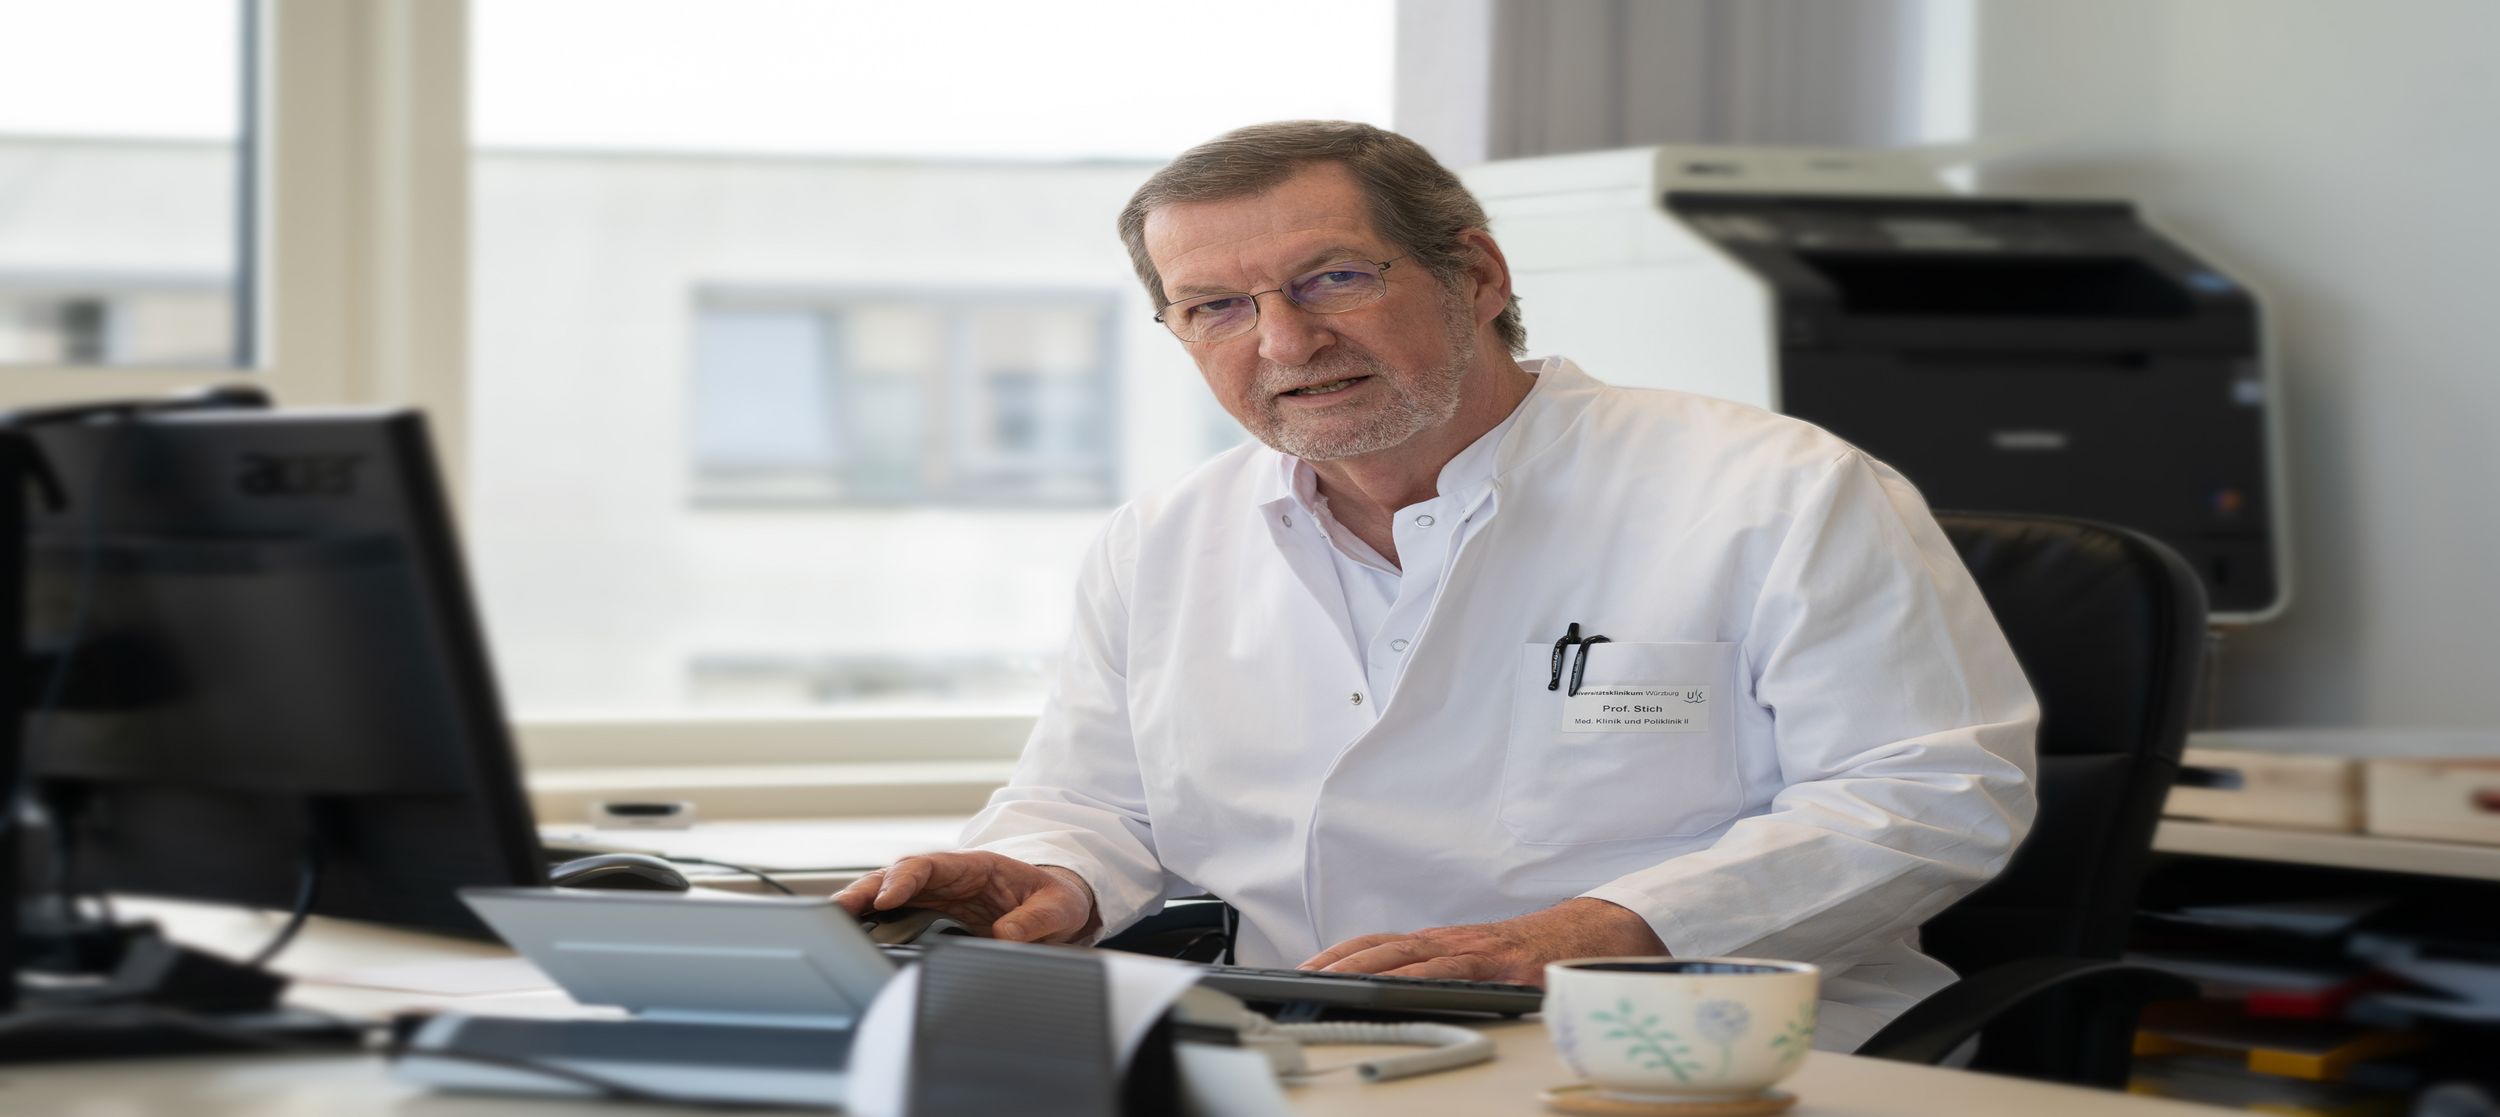 Prof. Dr. August Stich vom Uniklinikum Würzburg sitz am Computer